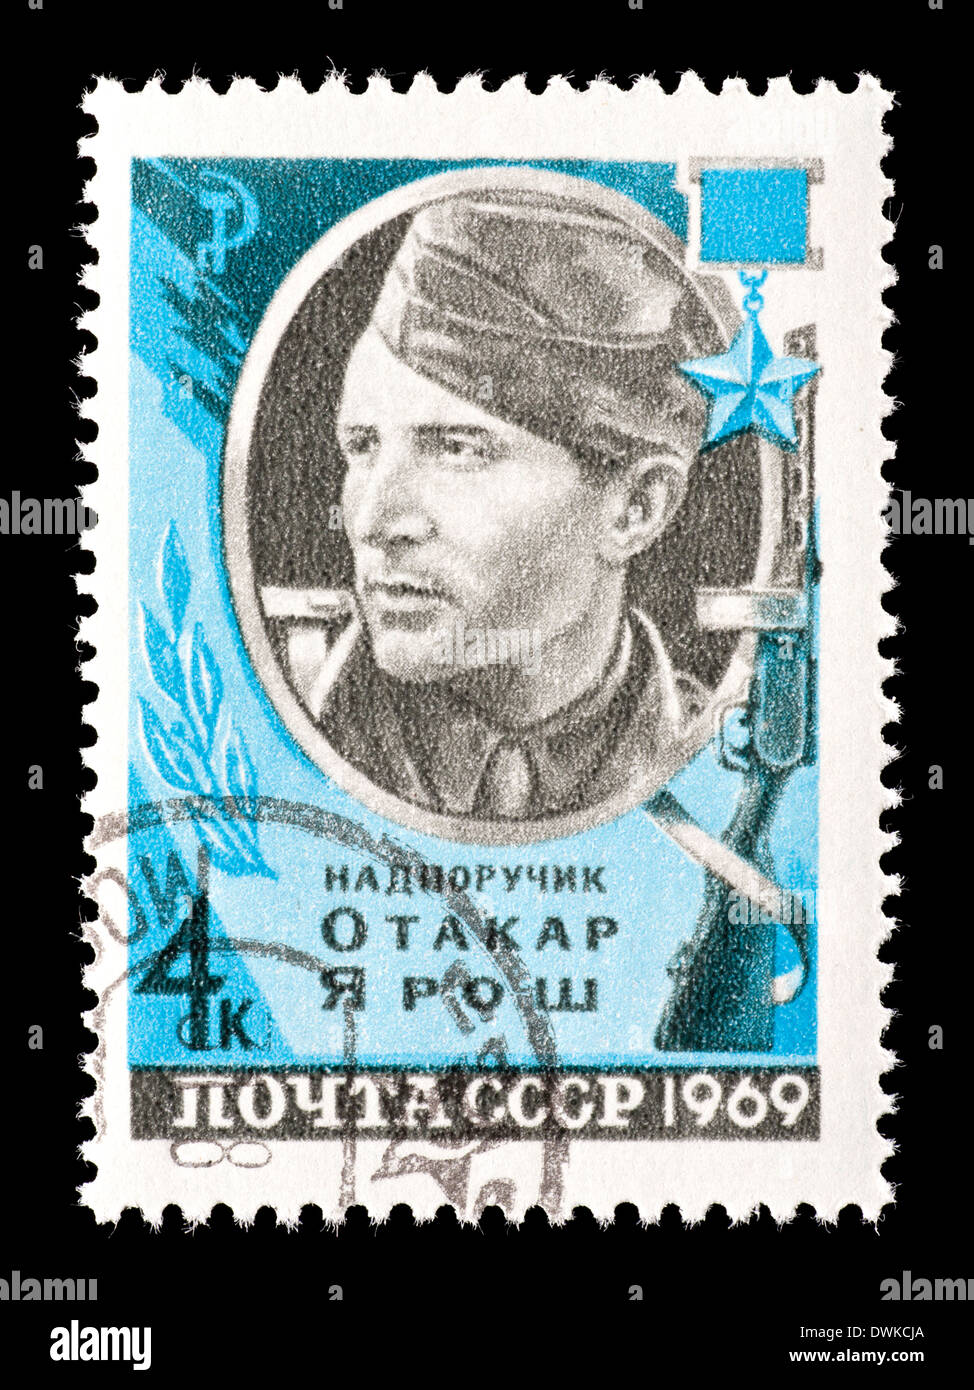 Francobollo dall'Unione Sovietica (URSS) raffigurante Otakar Yarosh, Cecoslovacco Svoboda battaglione, WW2 eroe. Foto Stock